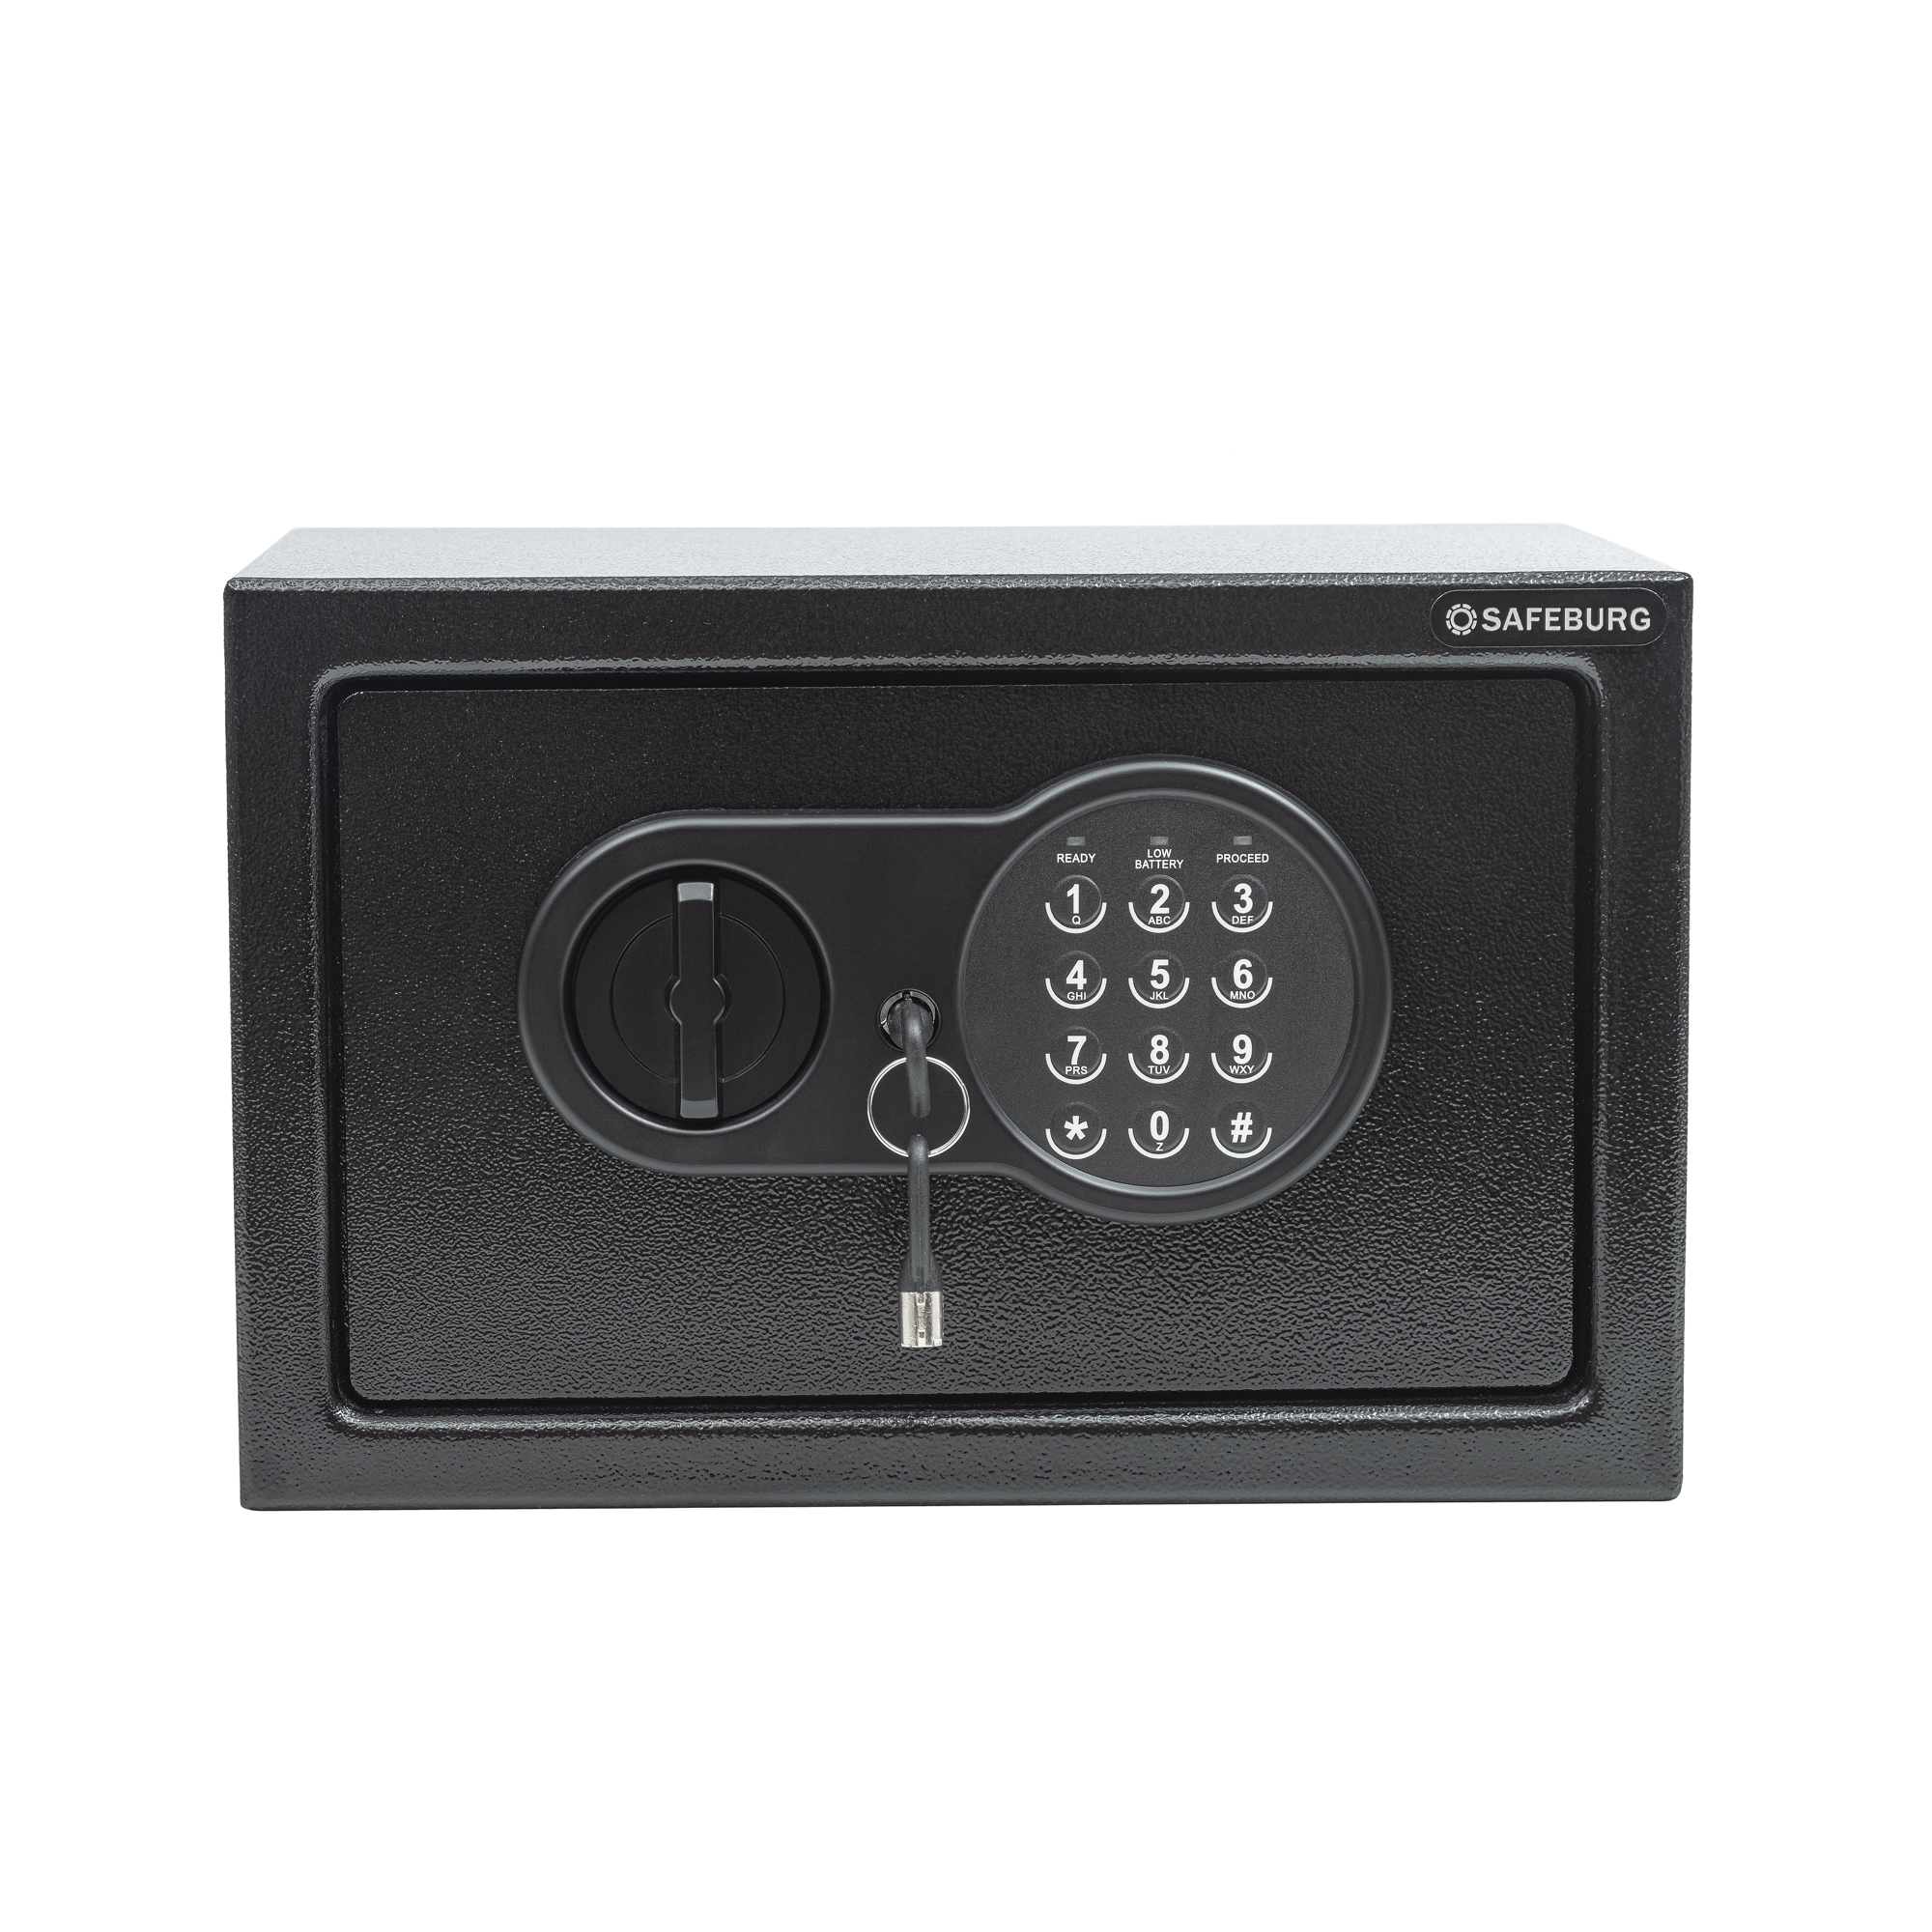 Сейф SAFEBURG SB-200 BLACK, сейф для денег и документов с электронным кодовым замком